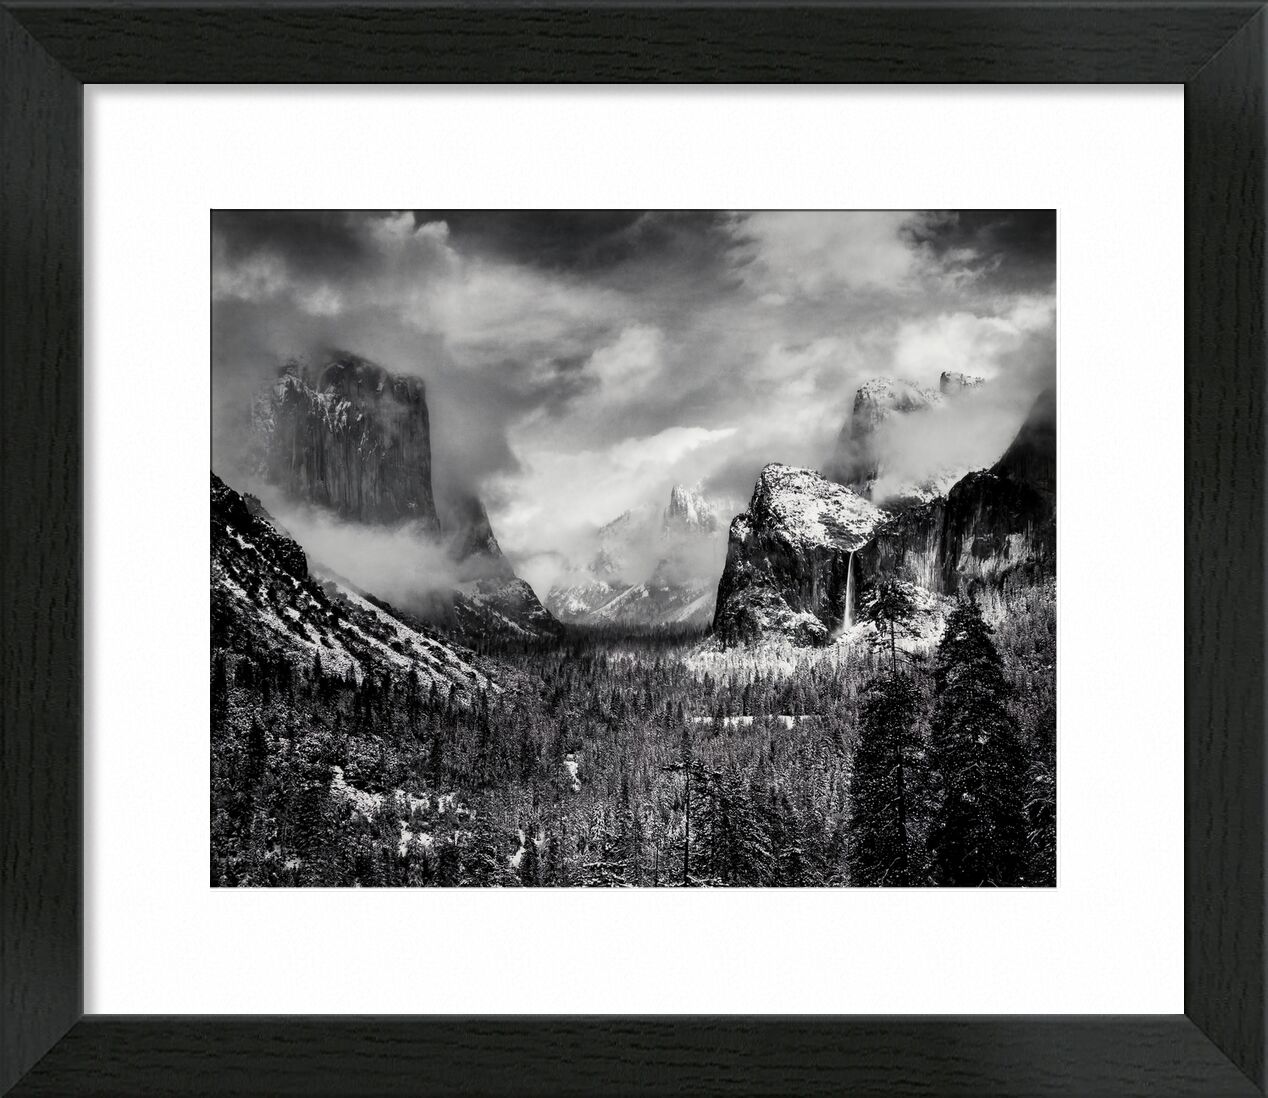 Yosemite, United States - ANSEL ADAMS 1952 von Bildende Kunst, Prodi Art, ANSEL ADAMS, Wald, Kiefern, Baum, Schnee, Winter, Wolken, Berge, Schwarz und weiß